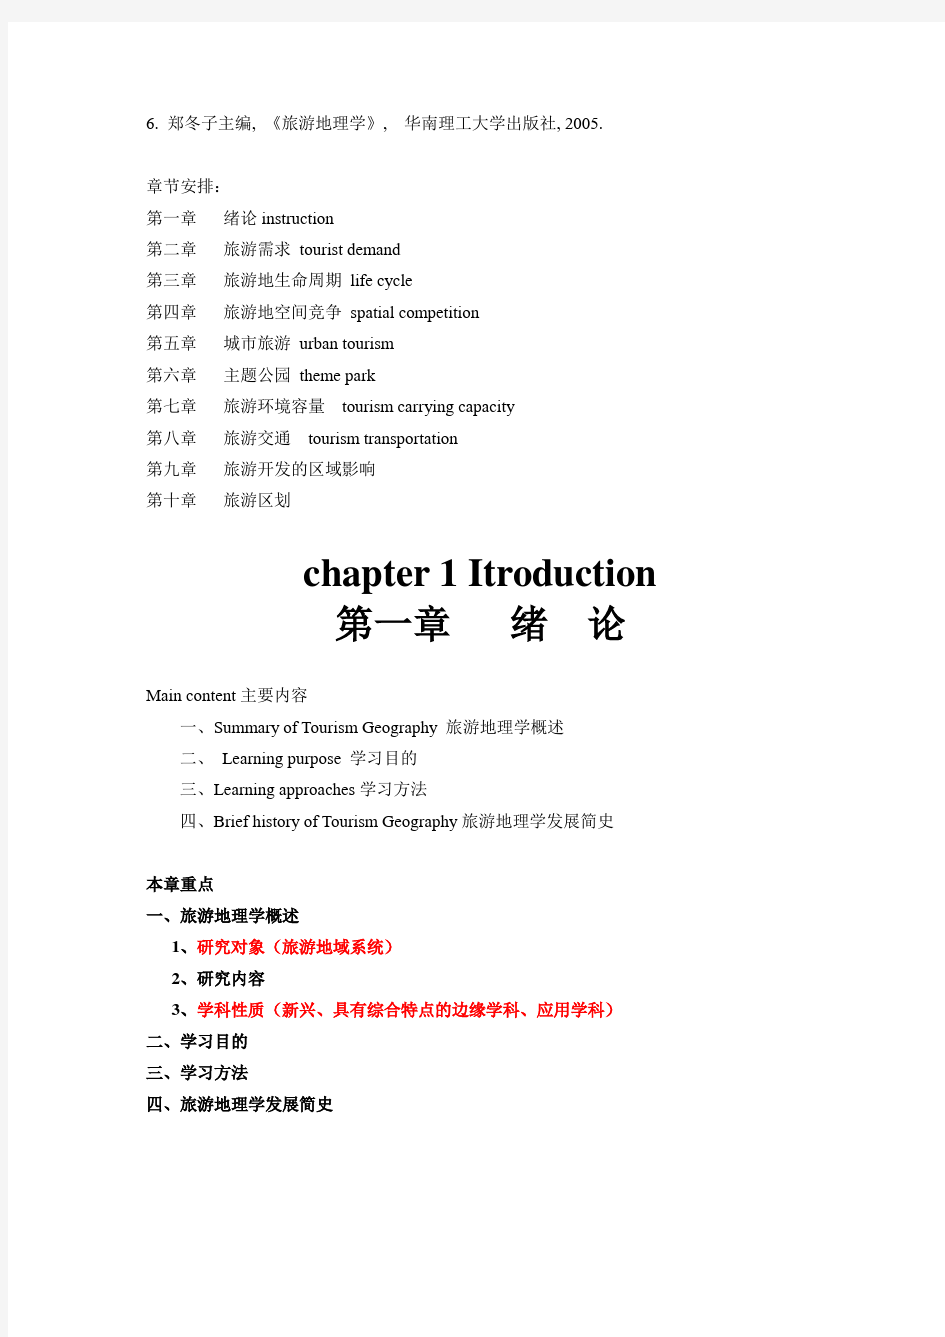 旅游地理学讲义(中英文)学生版第一章